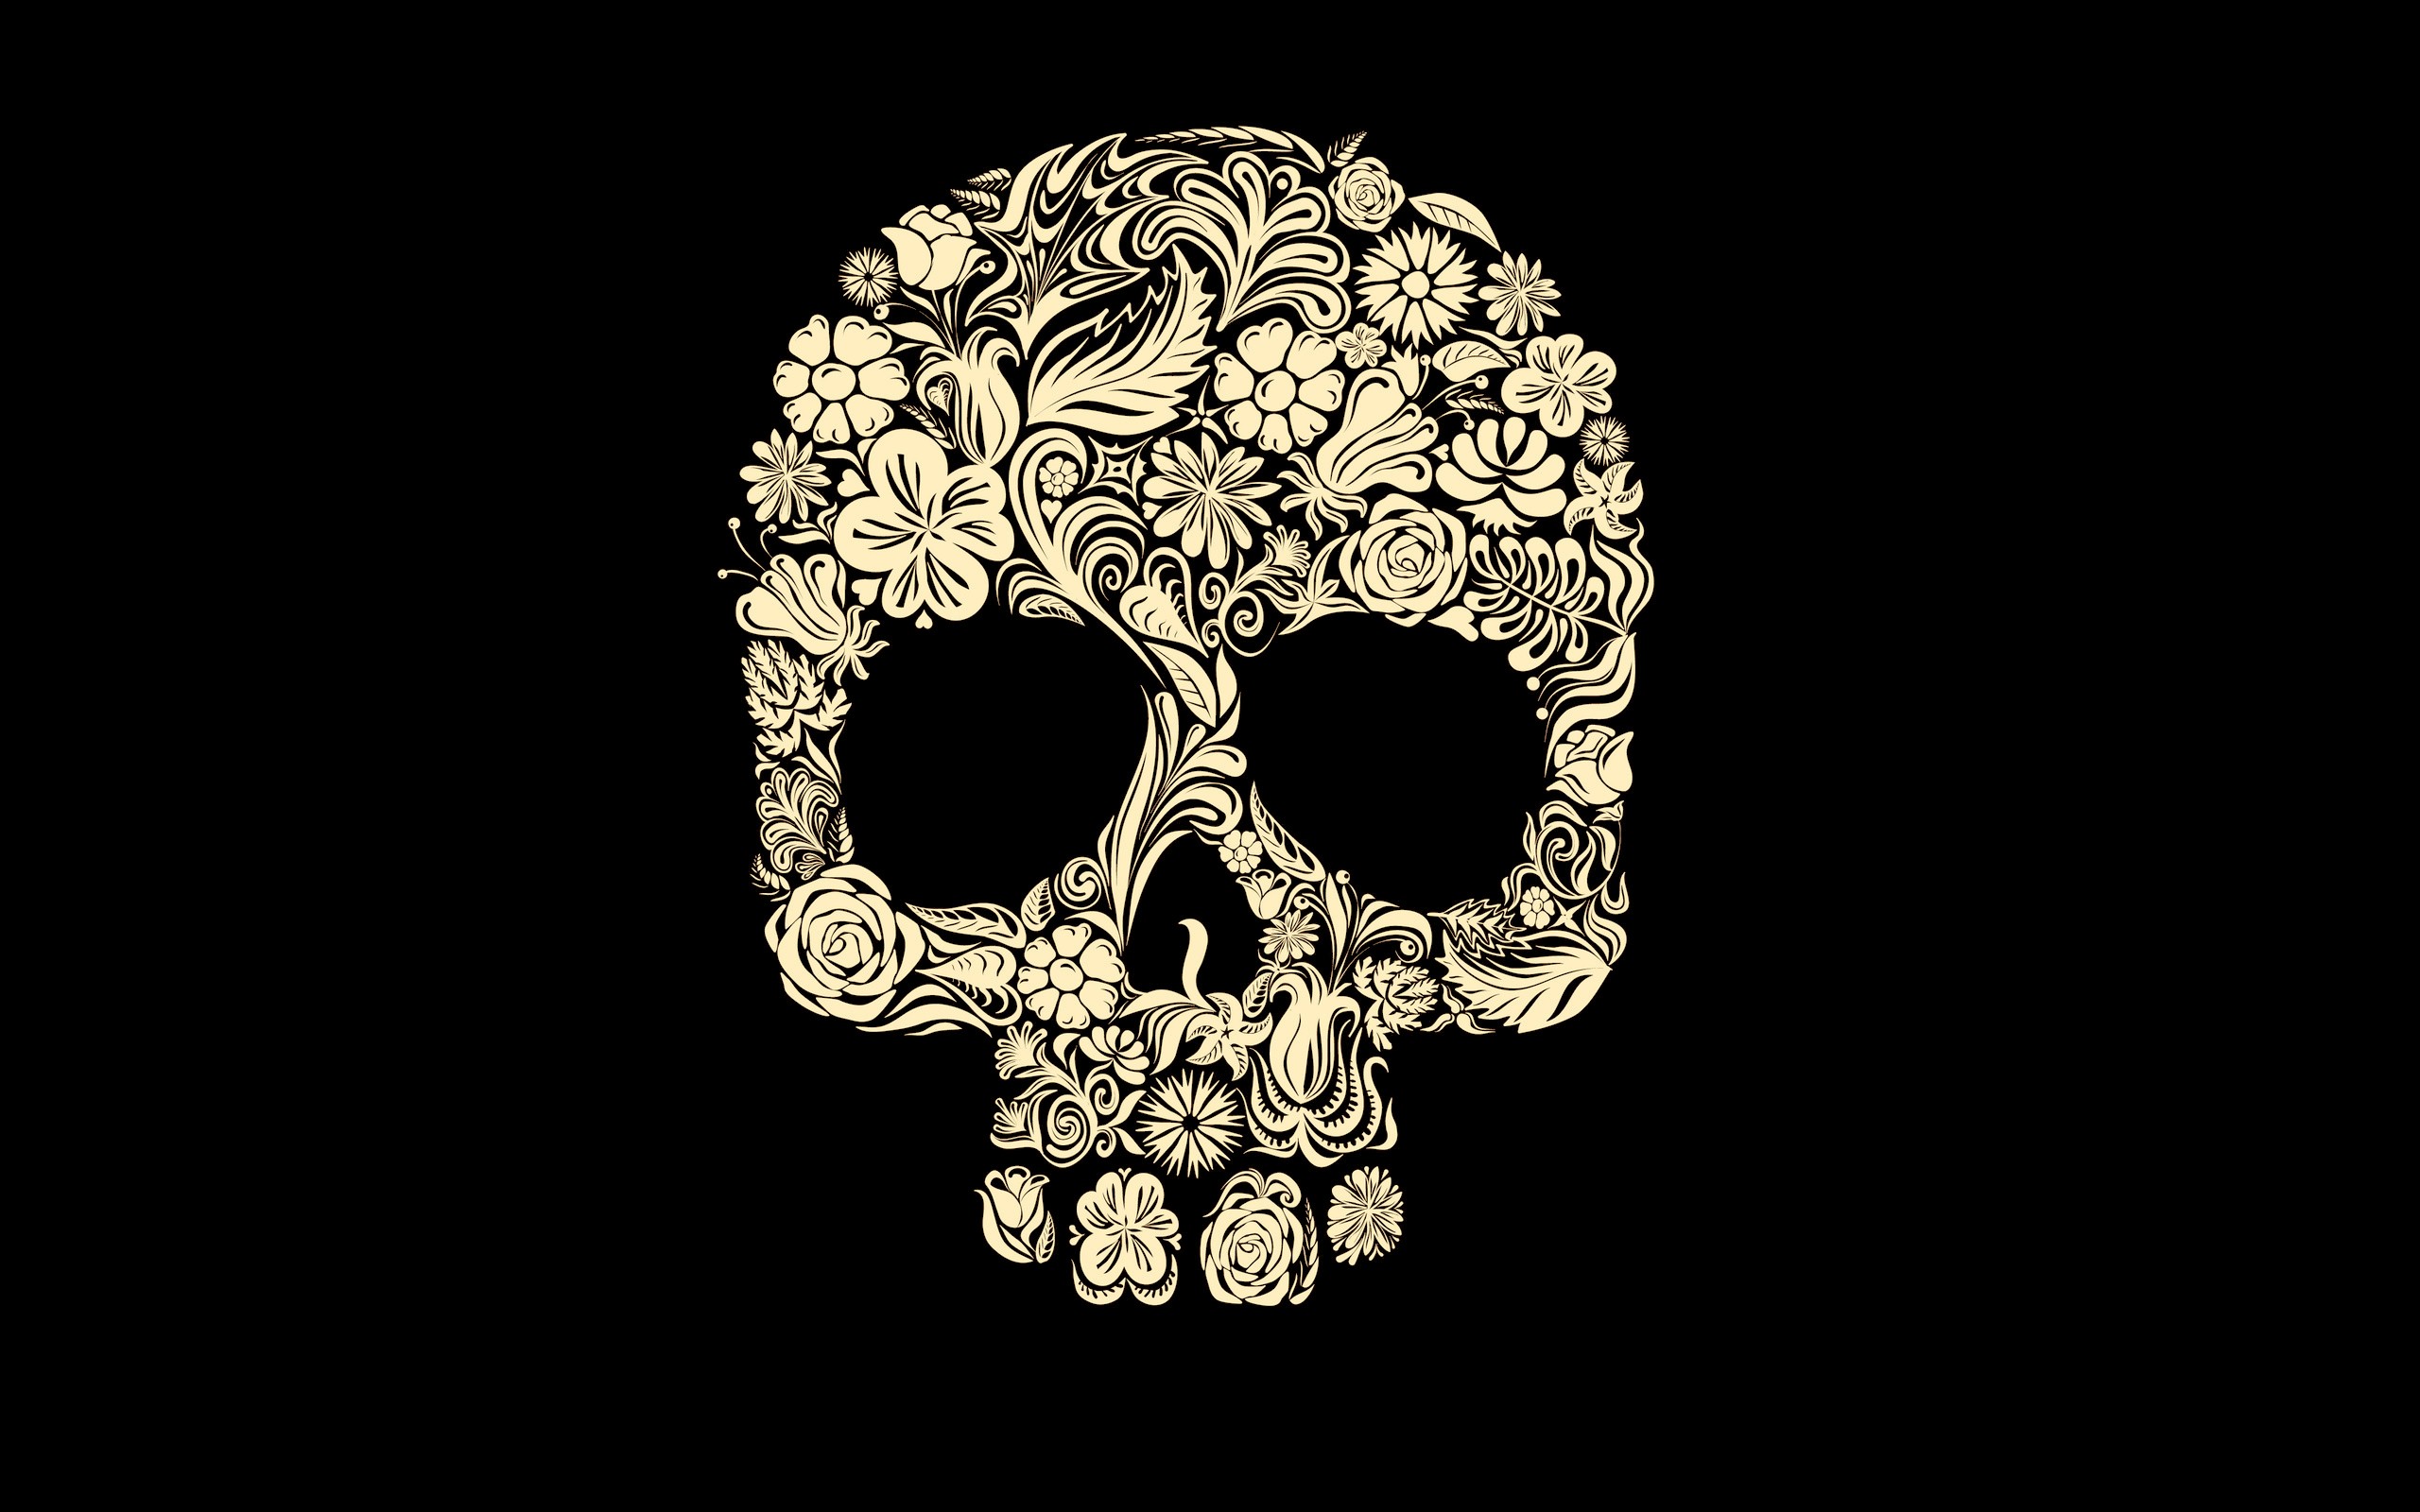 Skull Wallpaper Free | Castorit.com